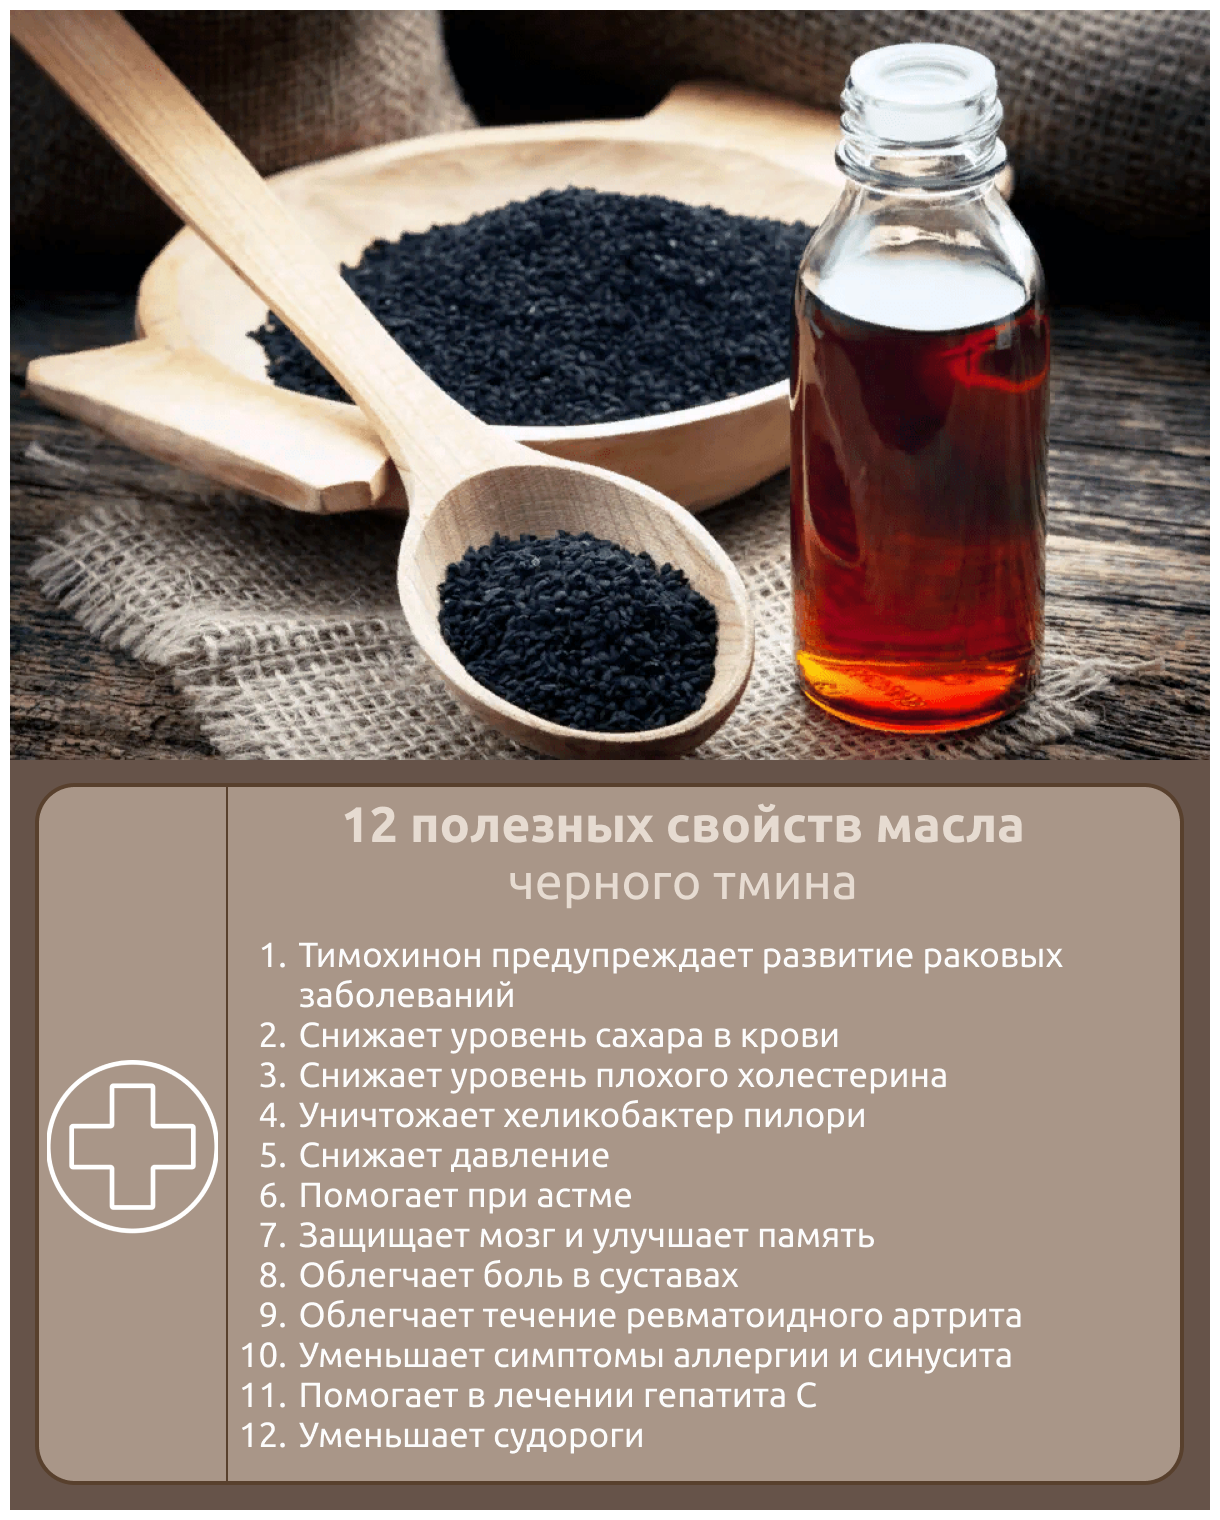 Черный тмин масло лечебные свойства и применение